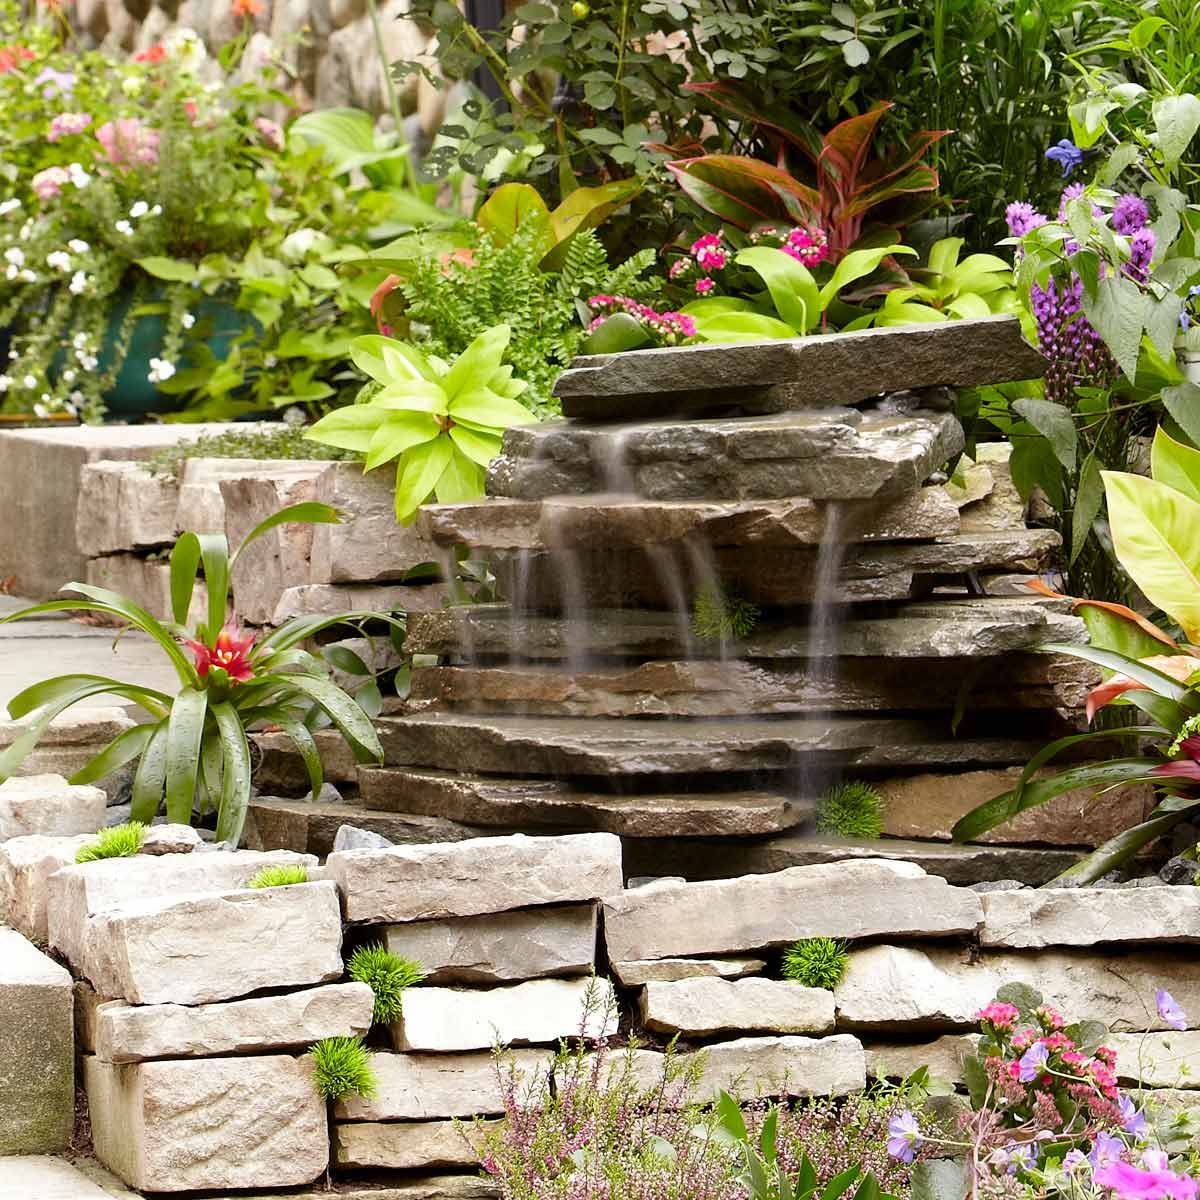 Best Buy and DIY Garden Water Features for Serene Outdoor Spaces